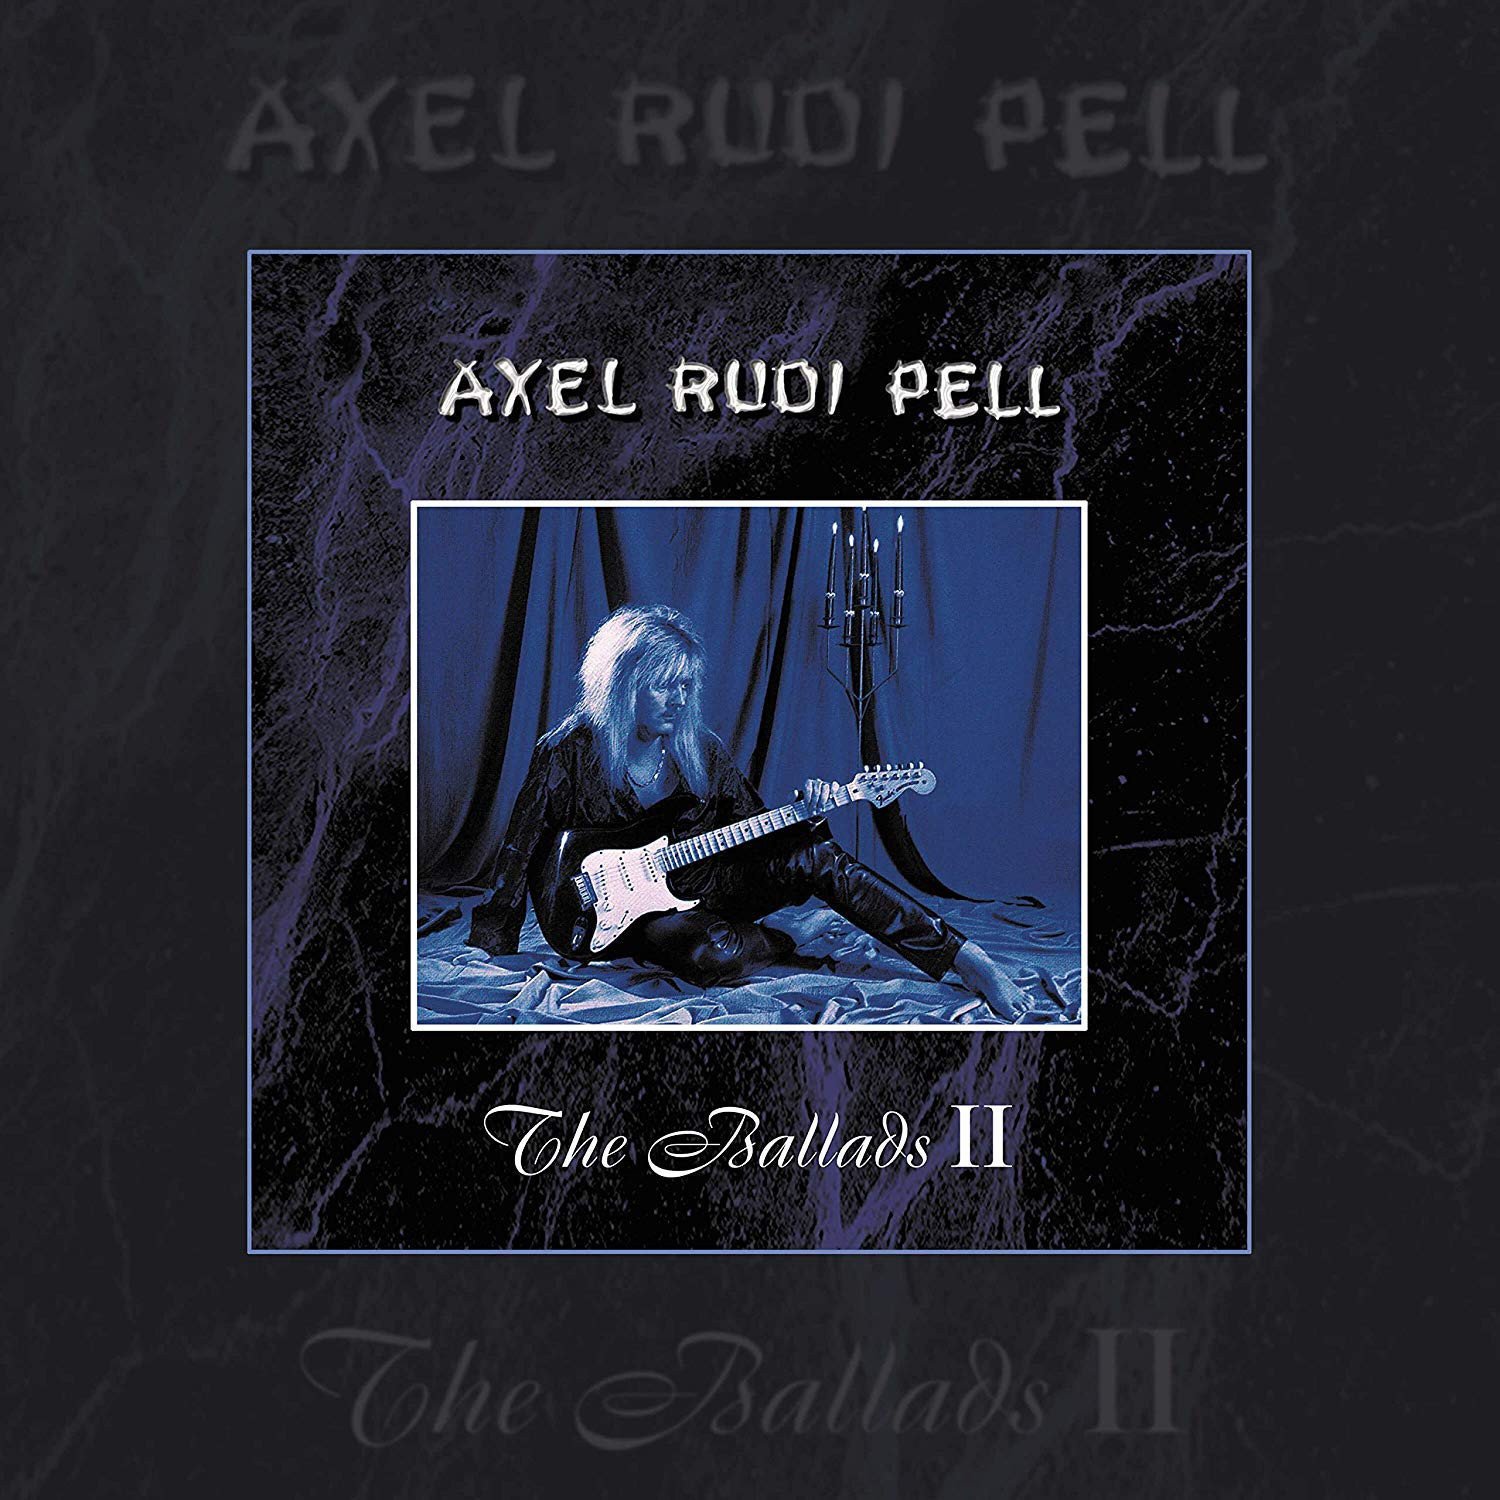 Vinylskiva Axel Rudi Pell - The Ballads Ii - LP Re-Release (2 LP + CD)